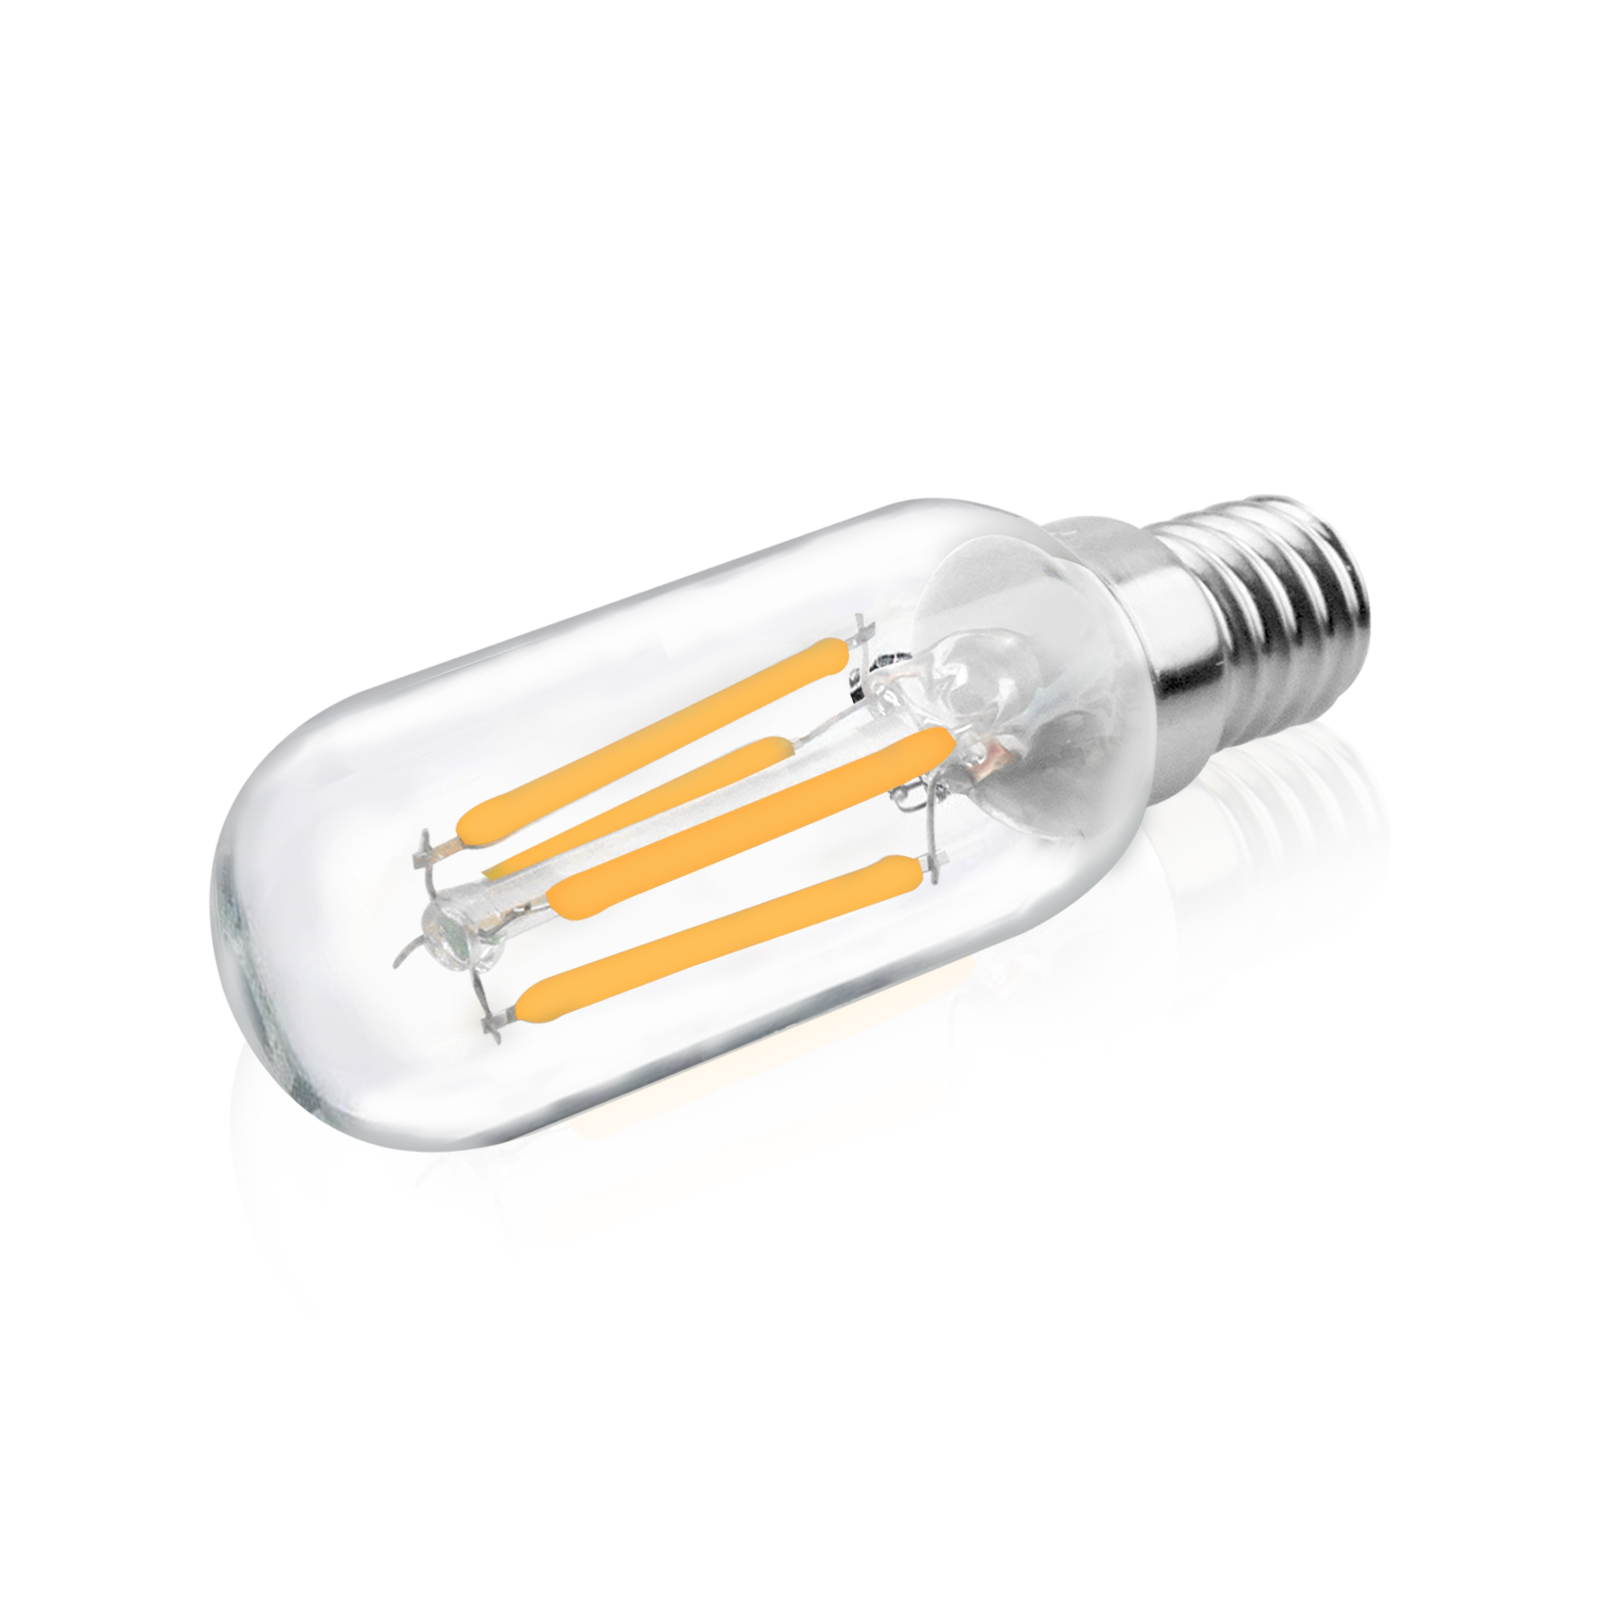 4W T25 E14 LED Vintage Light Bulb